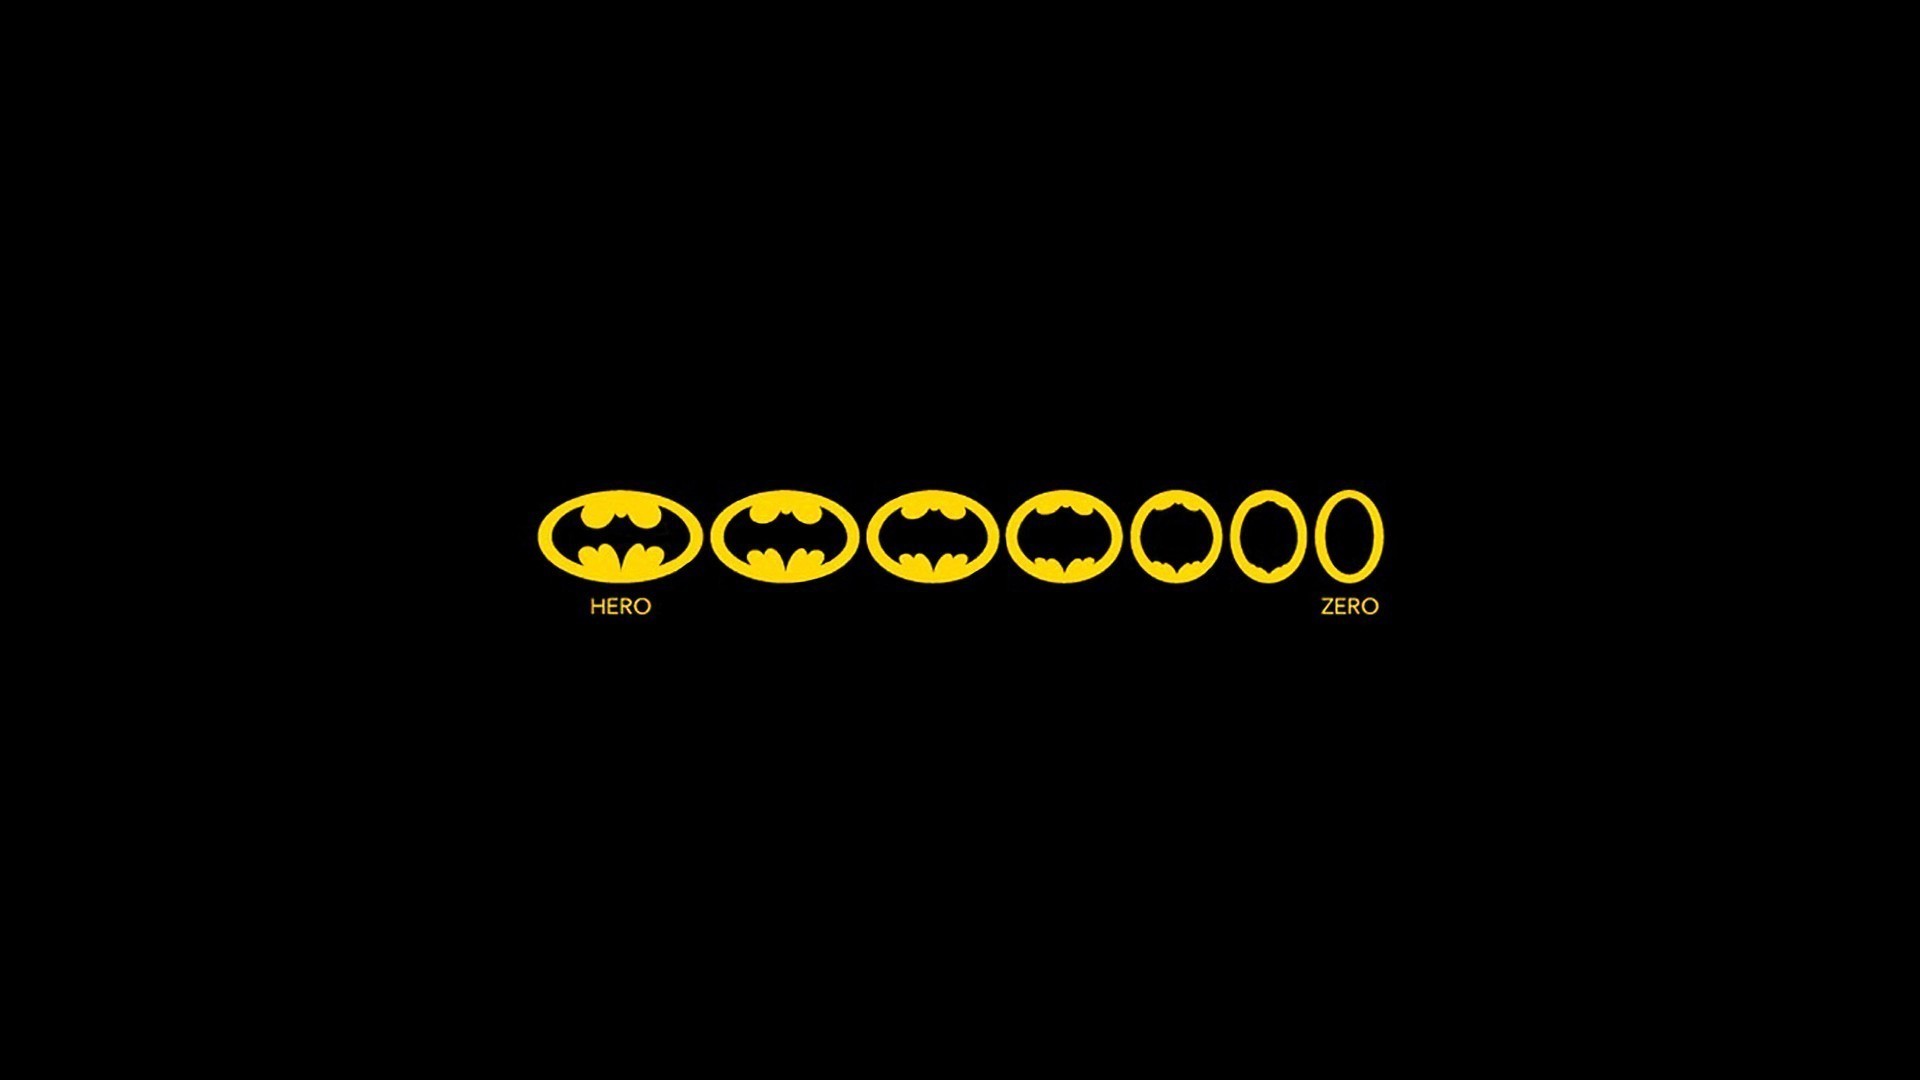 1920x1080  batman logo wallpaper - Google Search